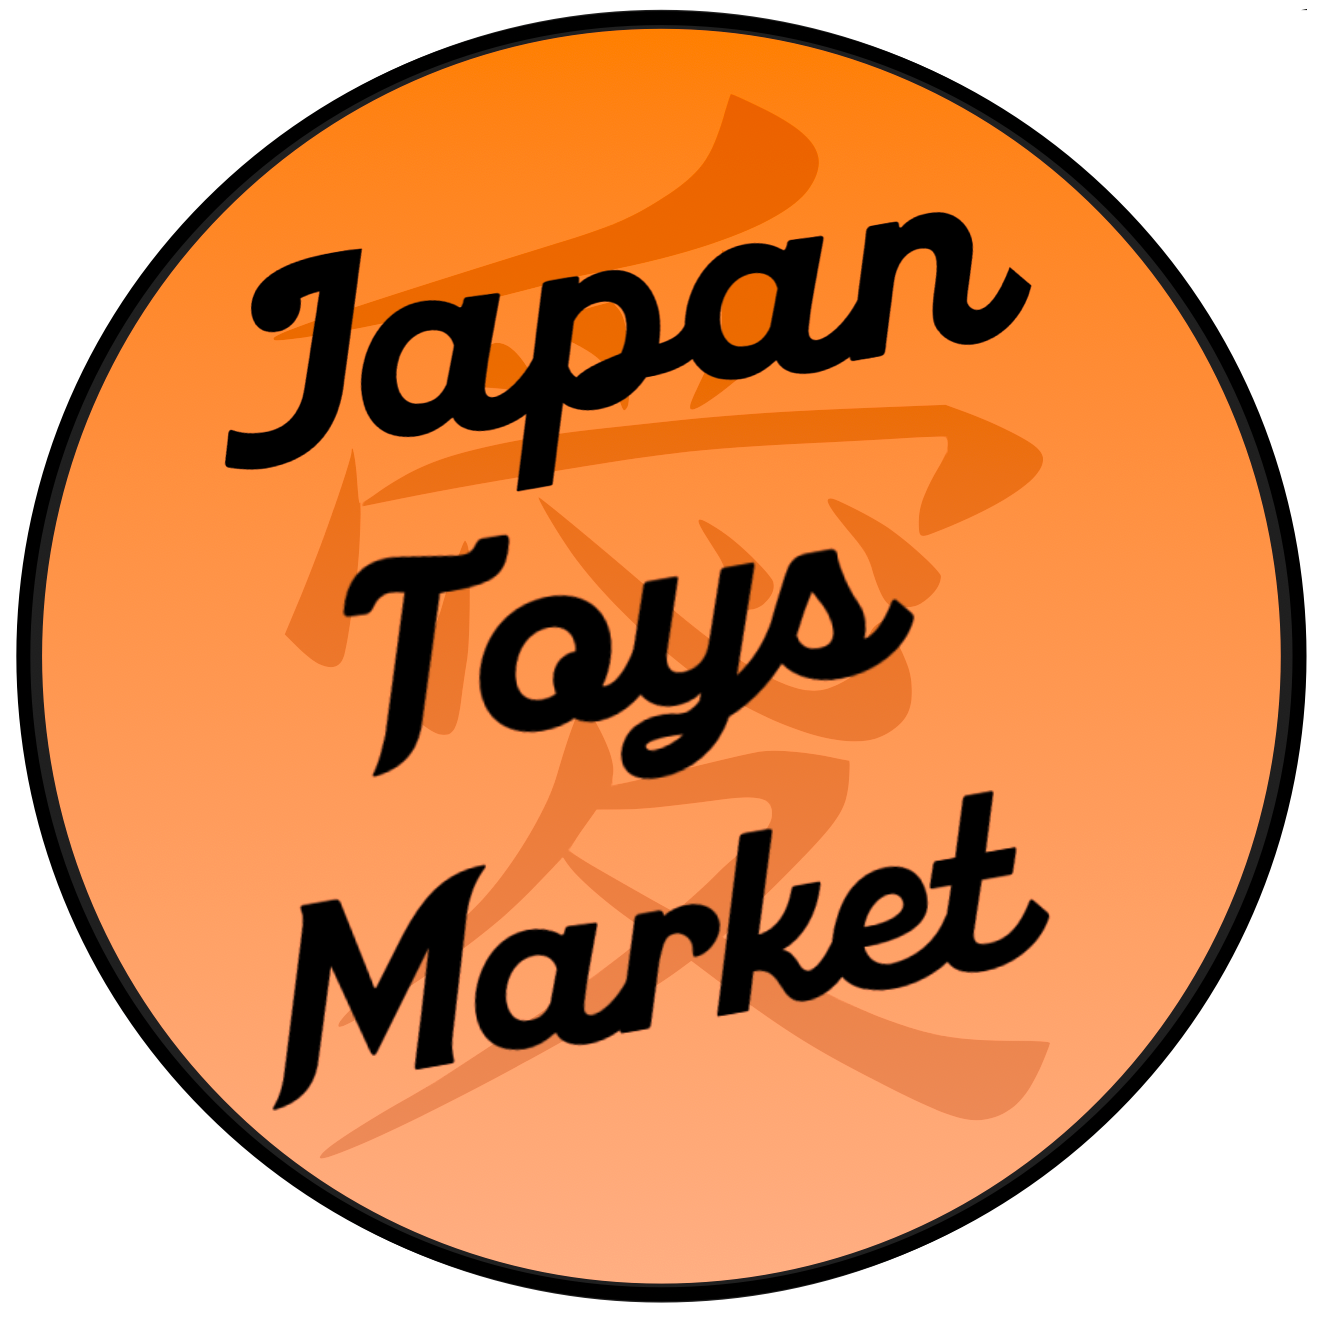 Cartes-cadeaux JapanToysMarket